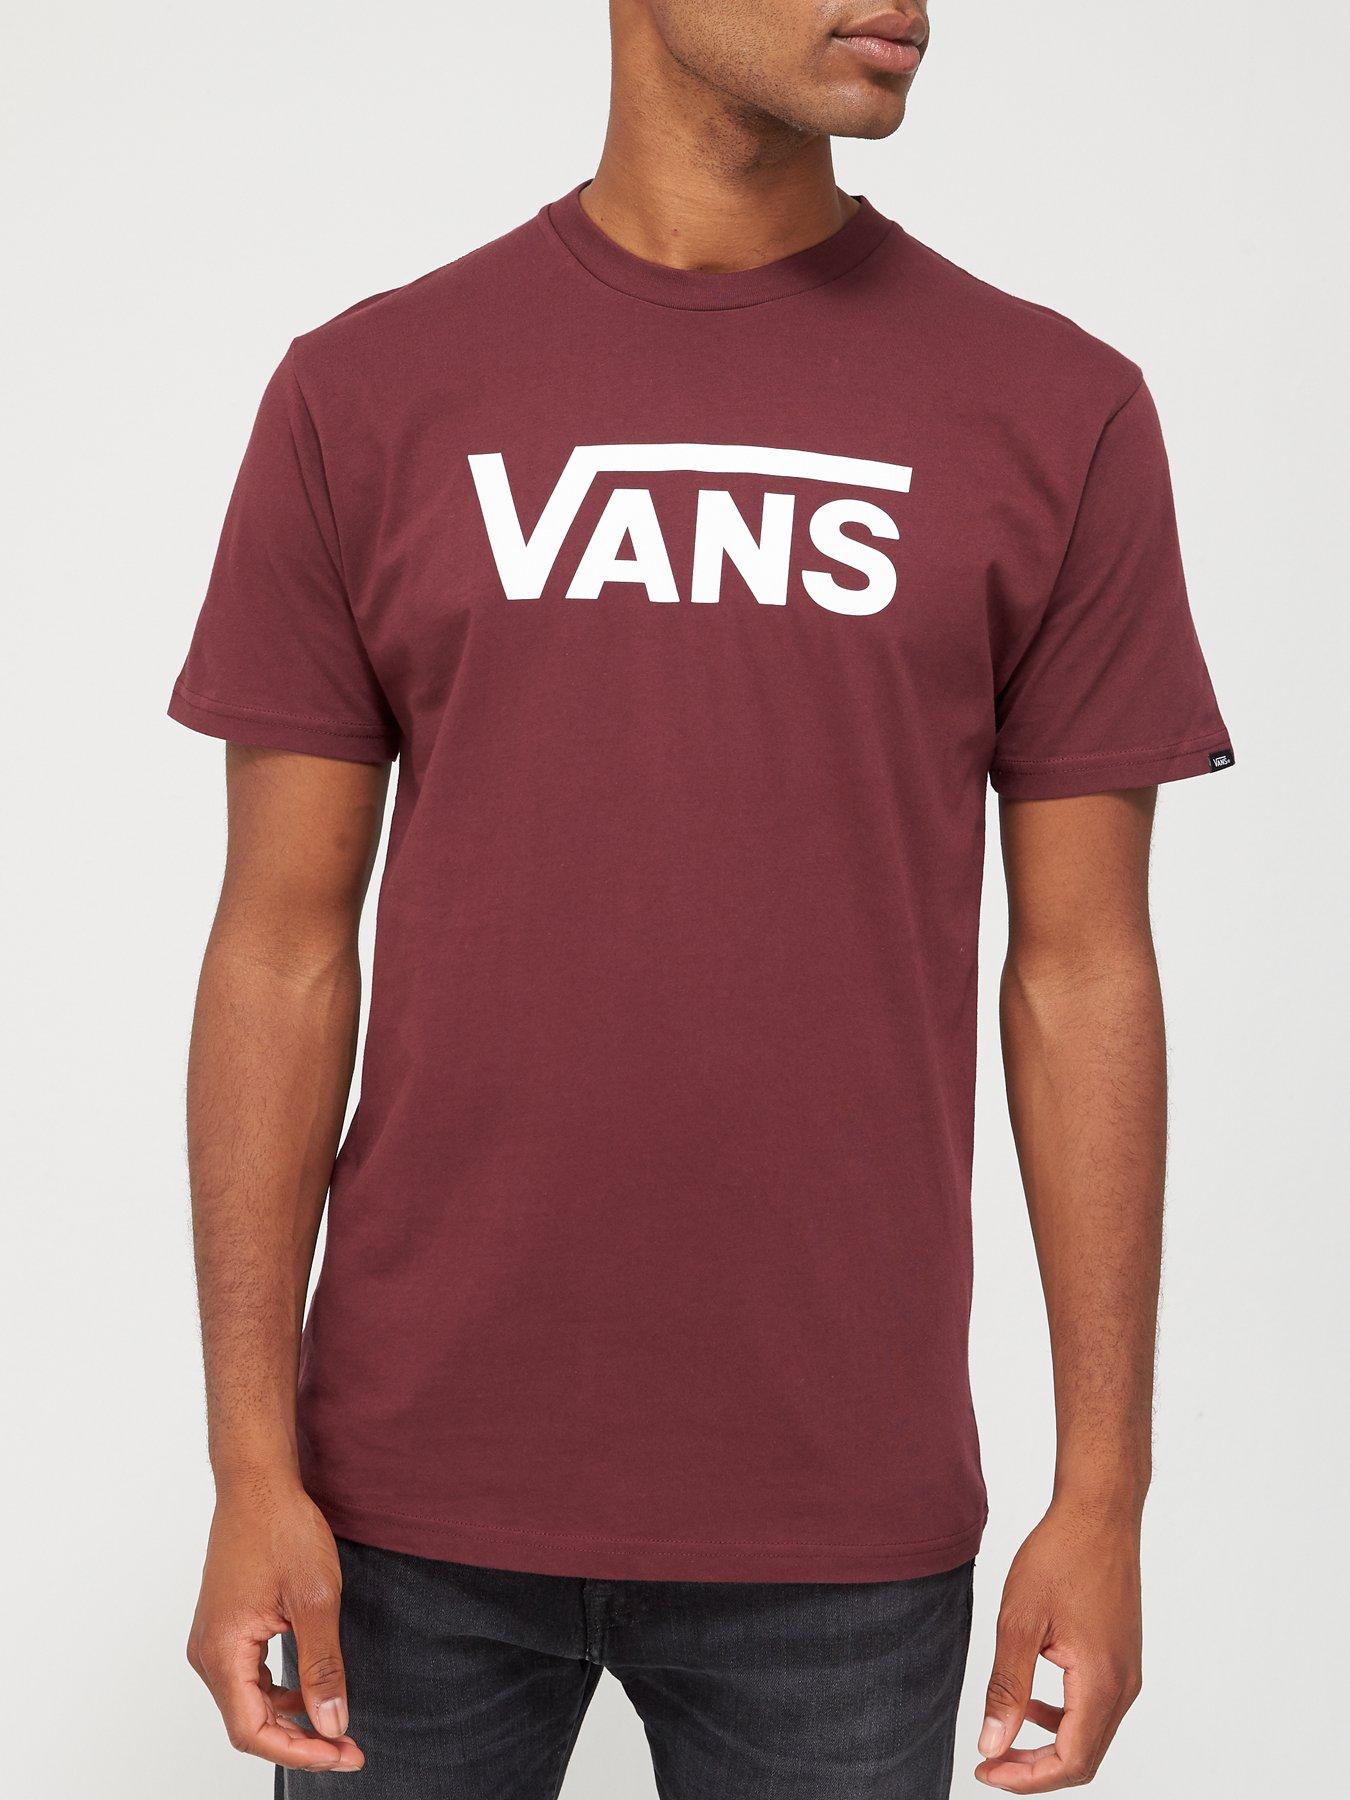 burgundy and white vans shirt